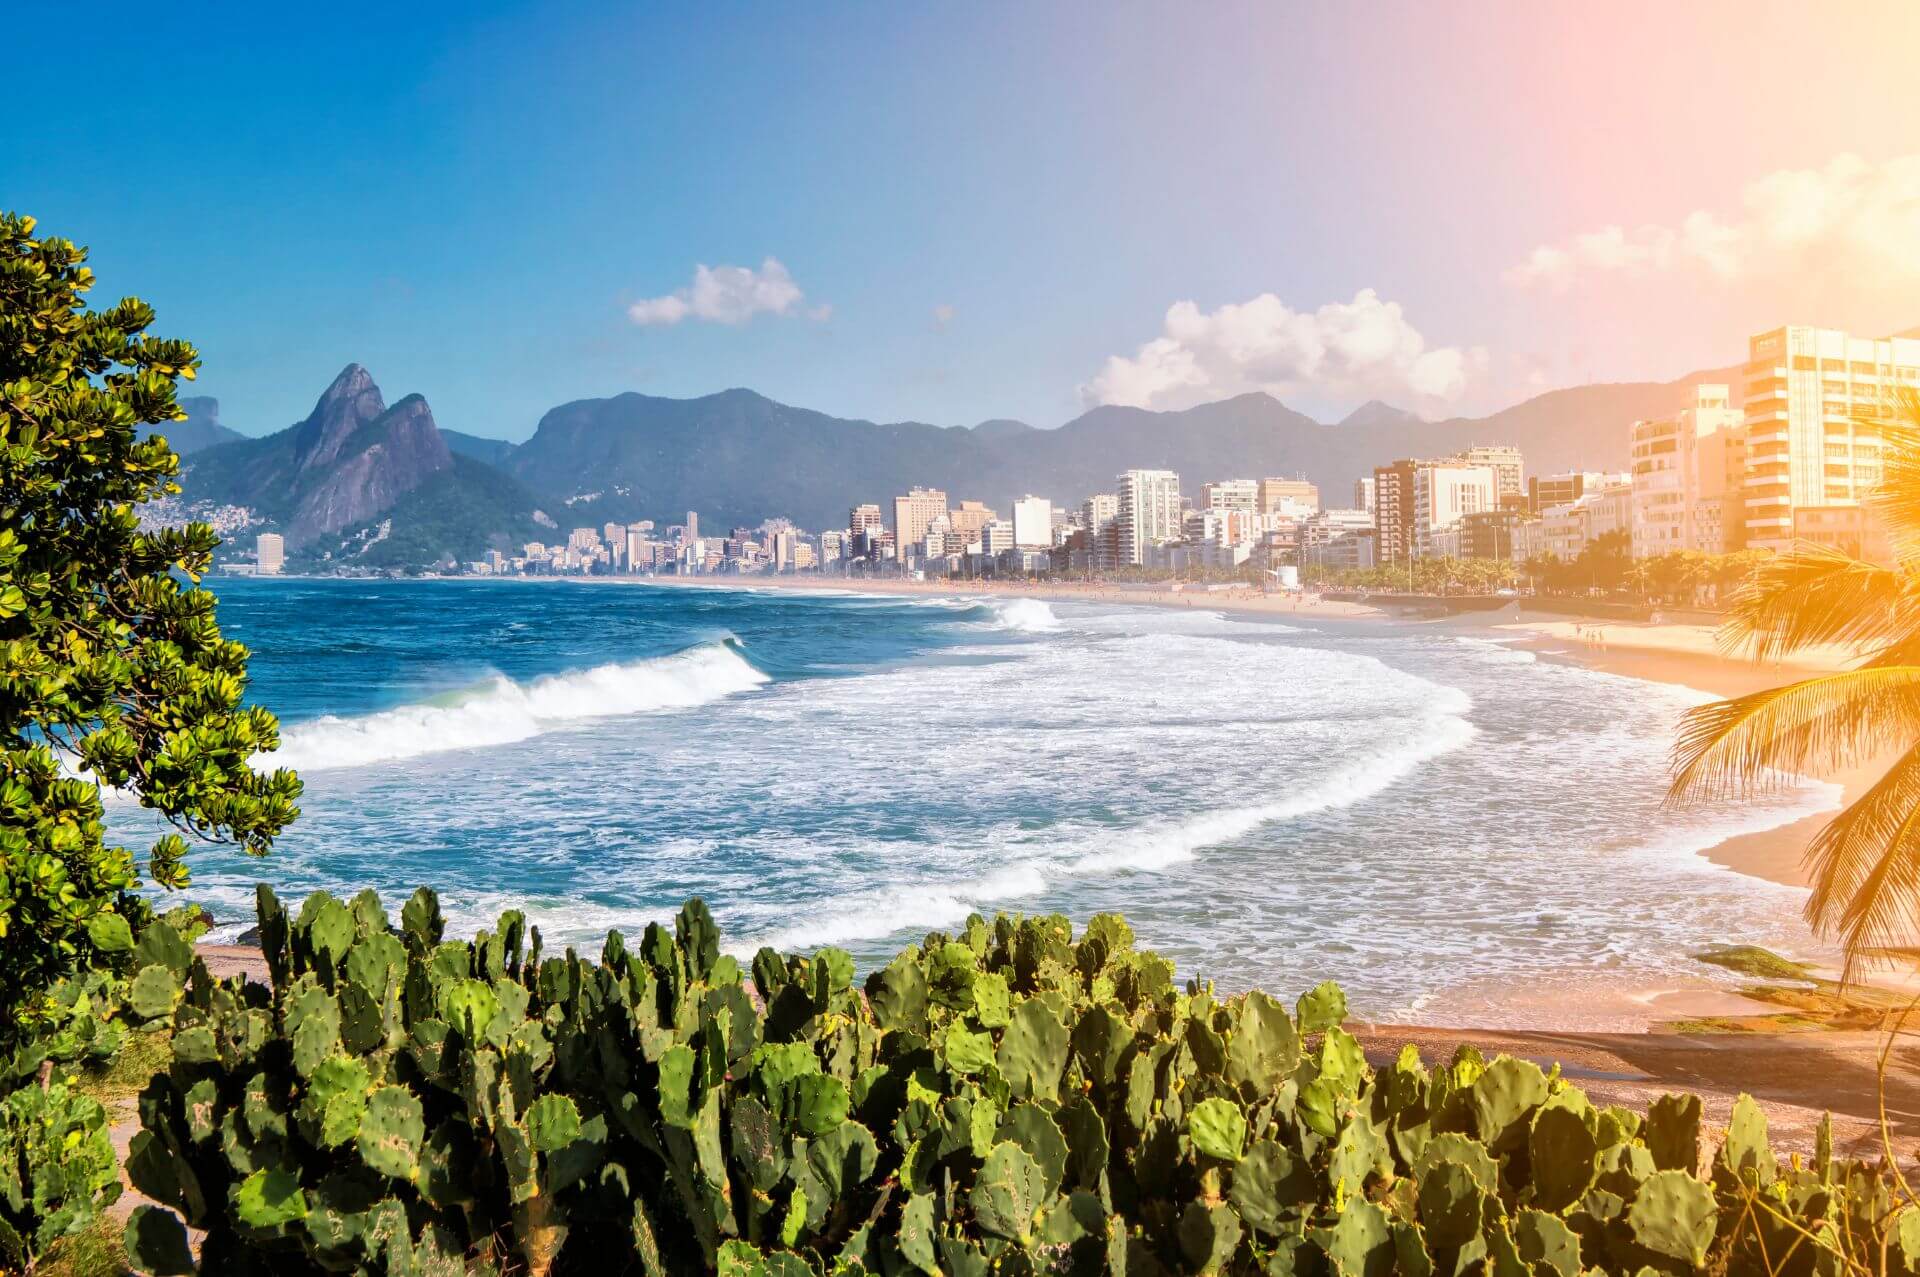 O Rio de Janeiro continua lindo com suas belezas naturais, cena cultural, artística e histórica que encantam o mundo todo sob as benções do Cristo Redentor.